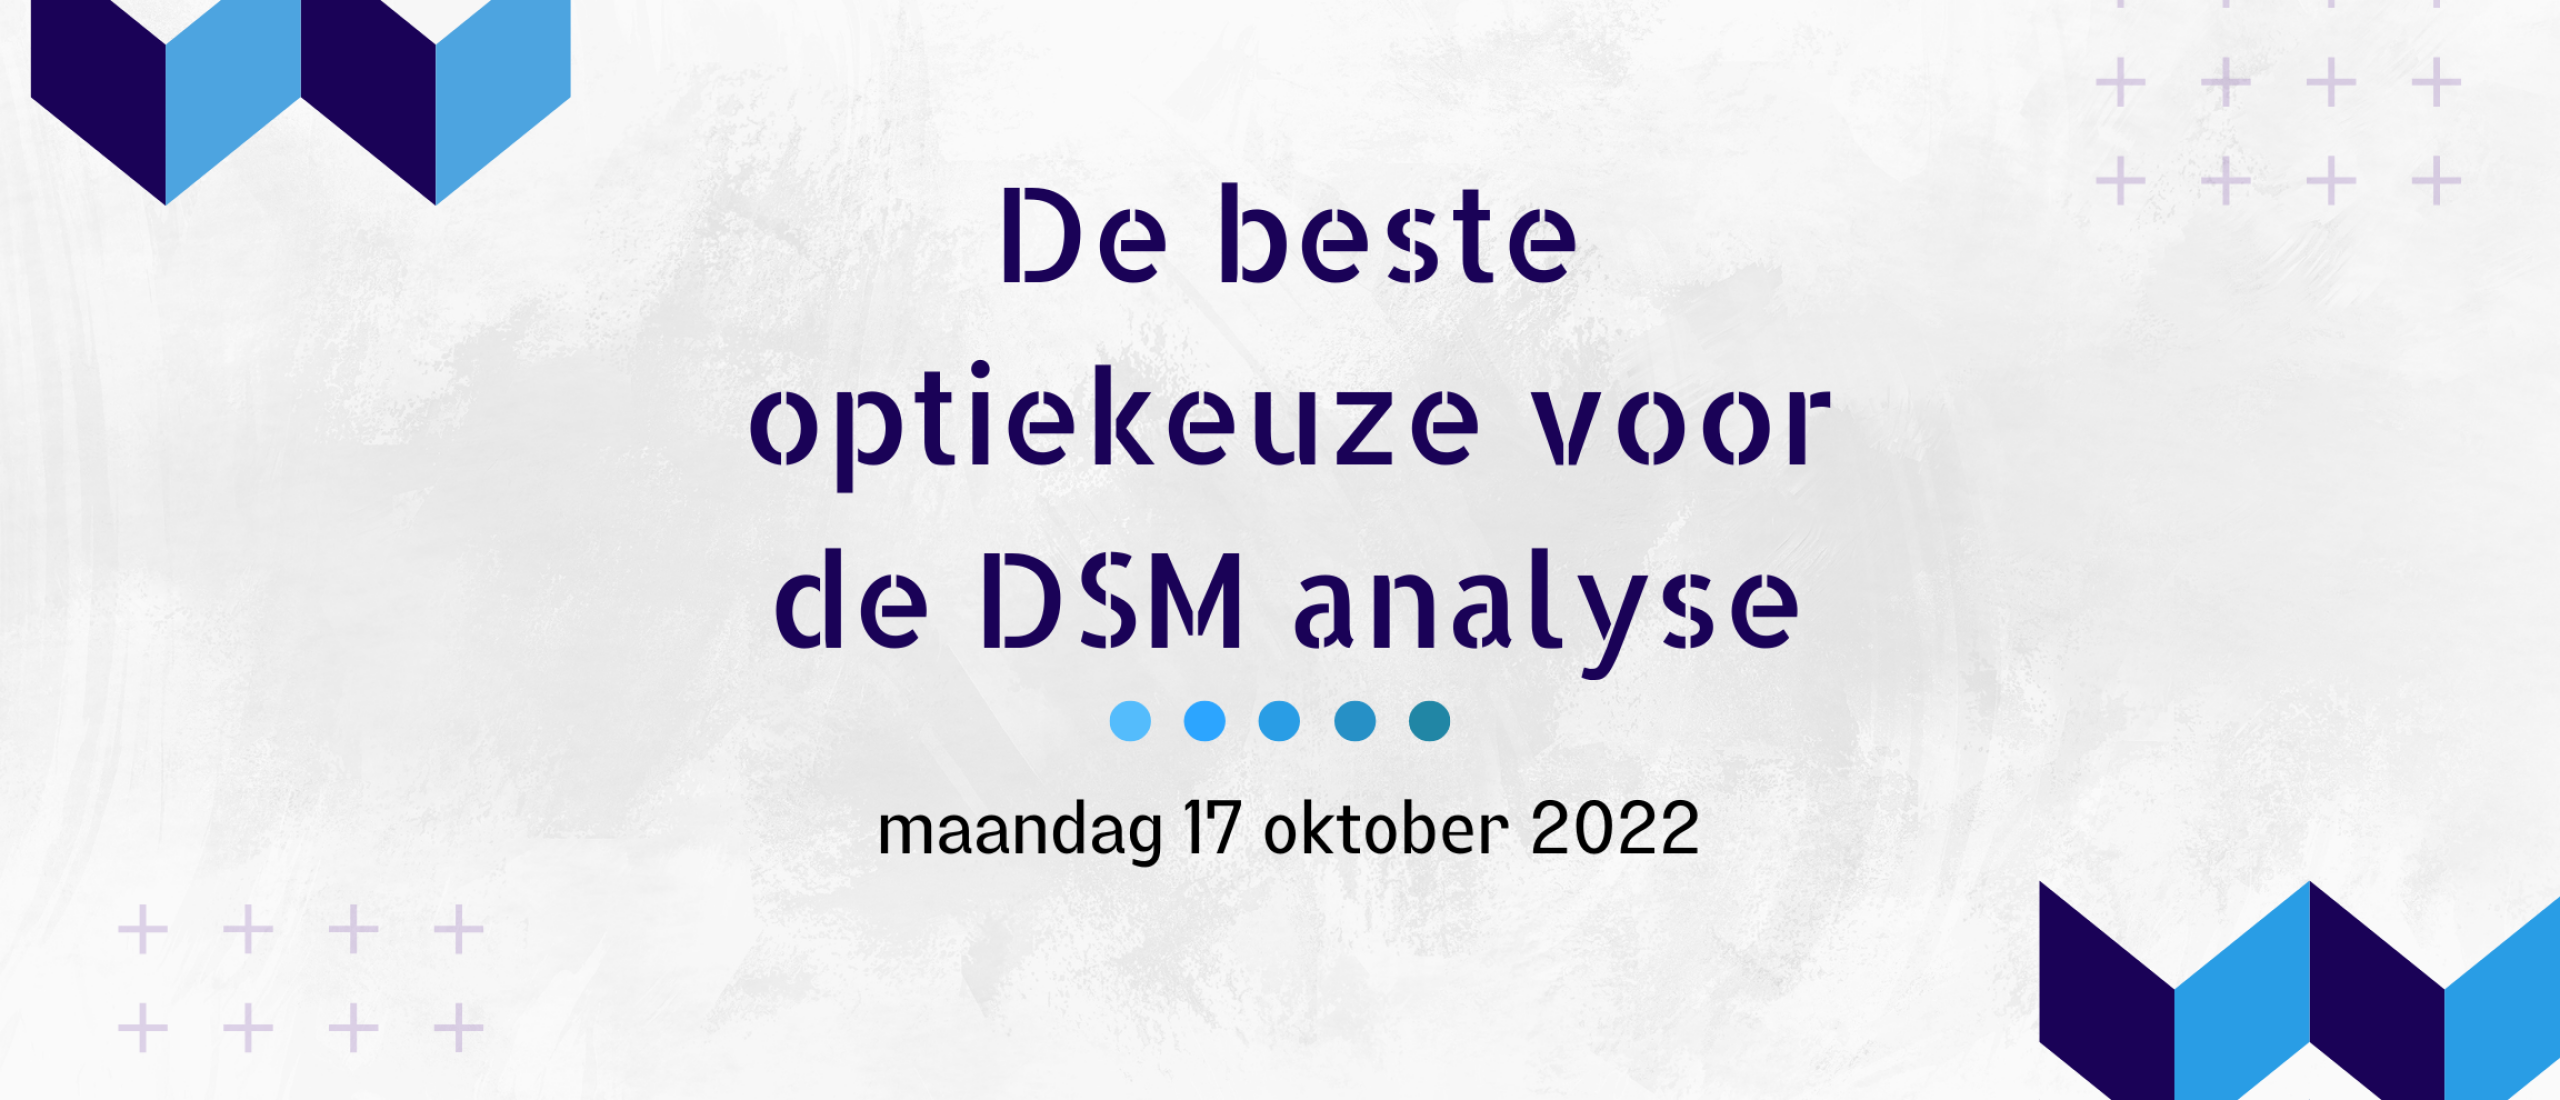 De beste optie keuze voor DSM (17 oktober 2022)